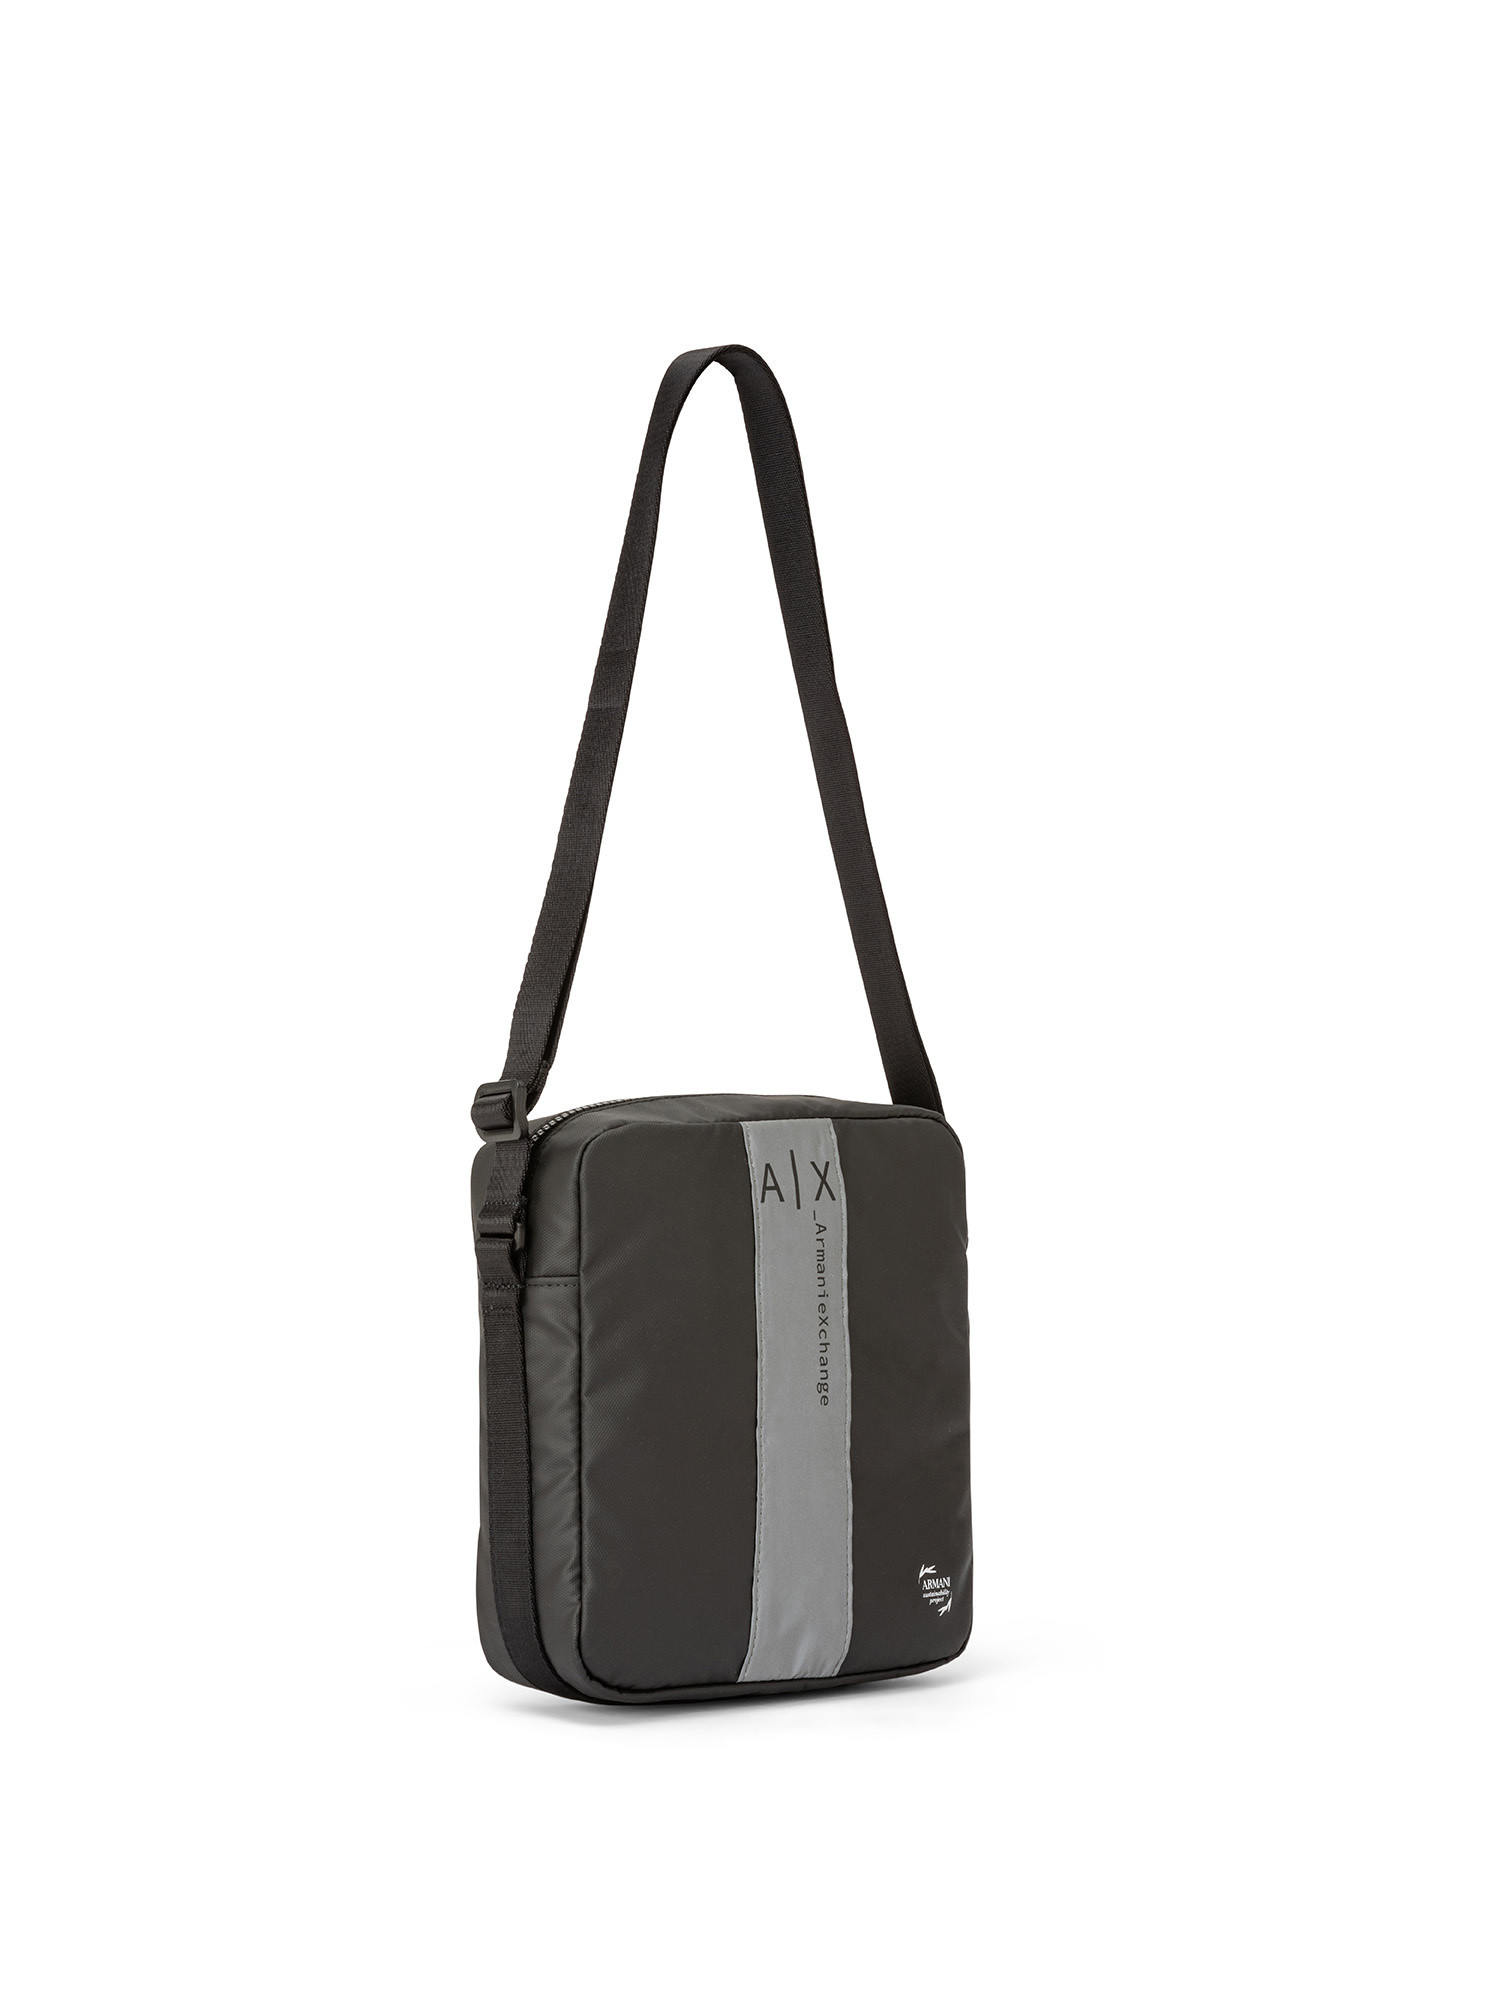 Armani Exchange - Shoulder bag with logo, Black, large image number 1